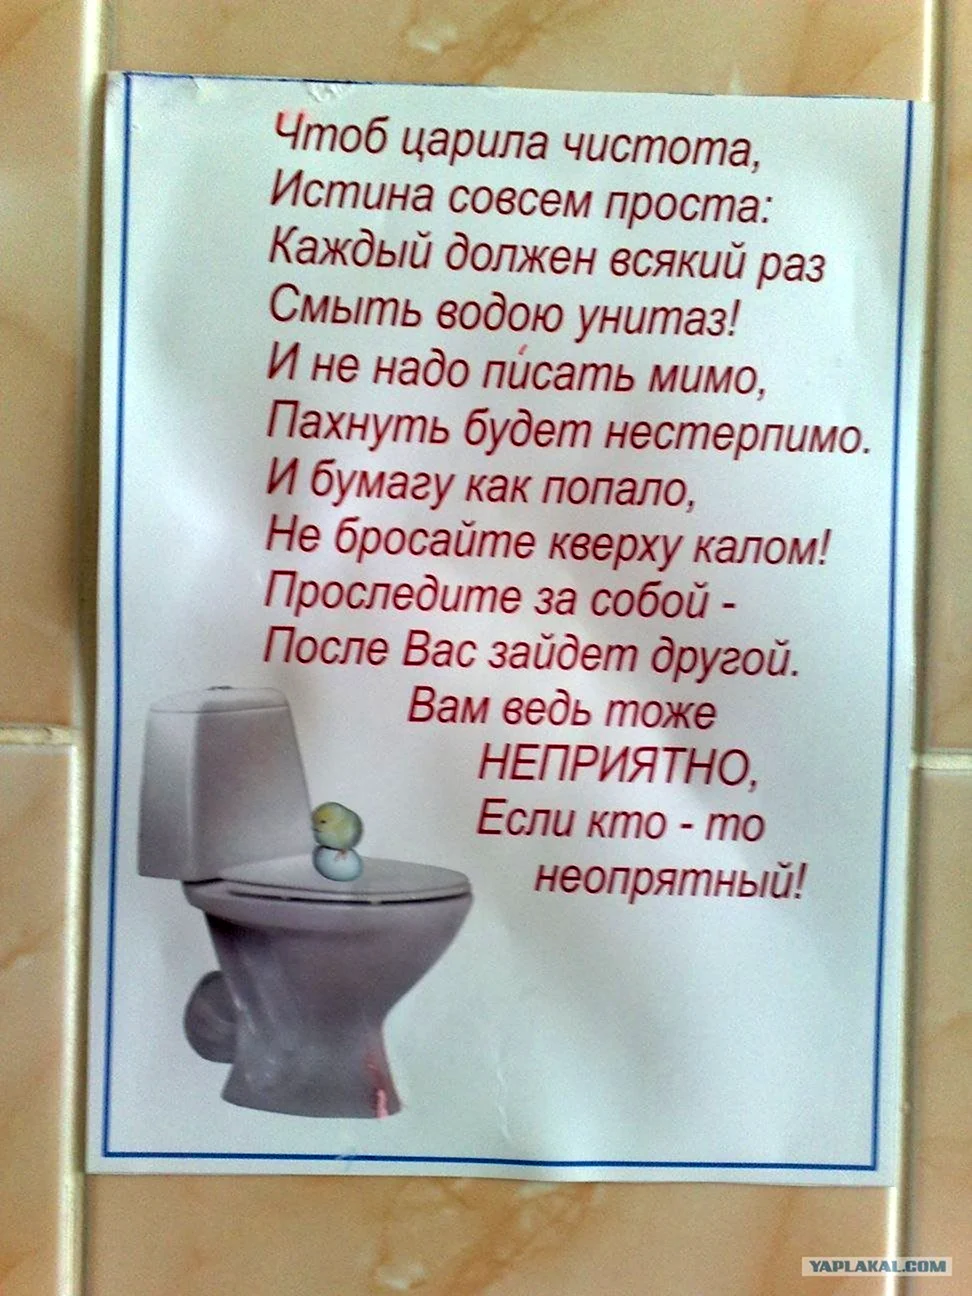 Объявление о чистоте в туалете